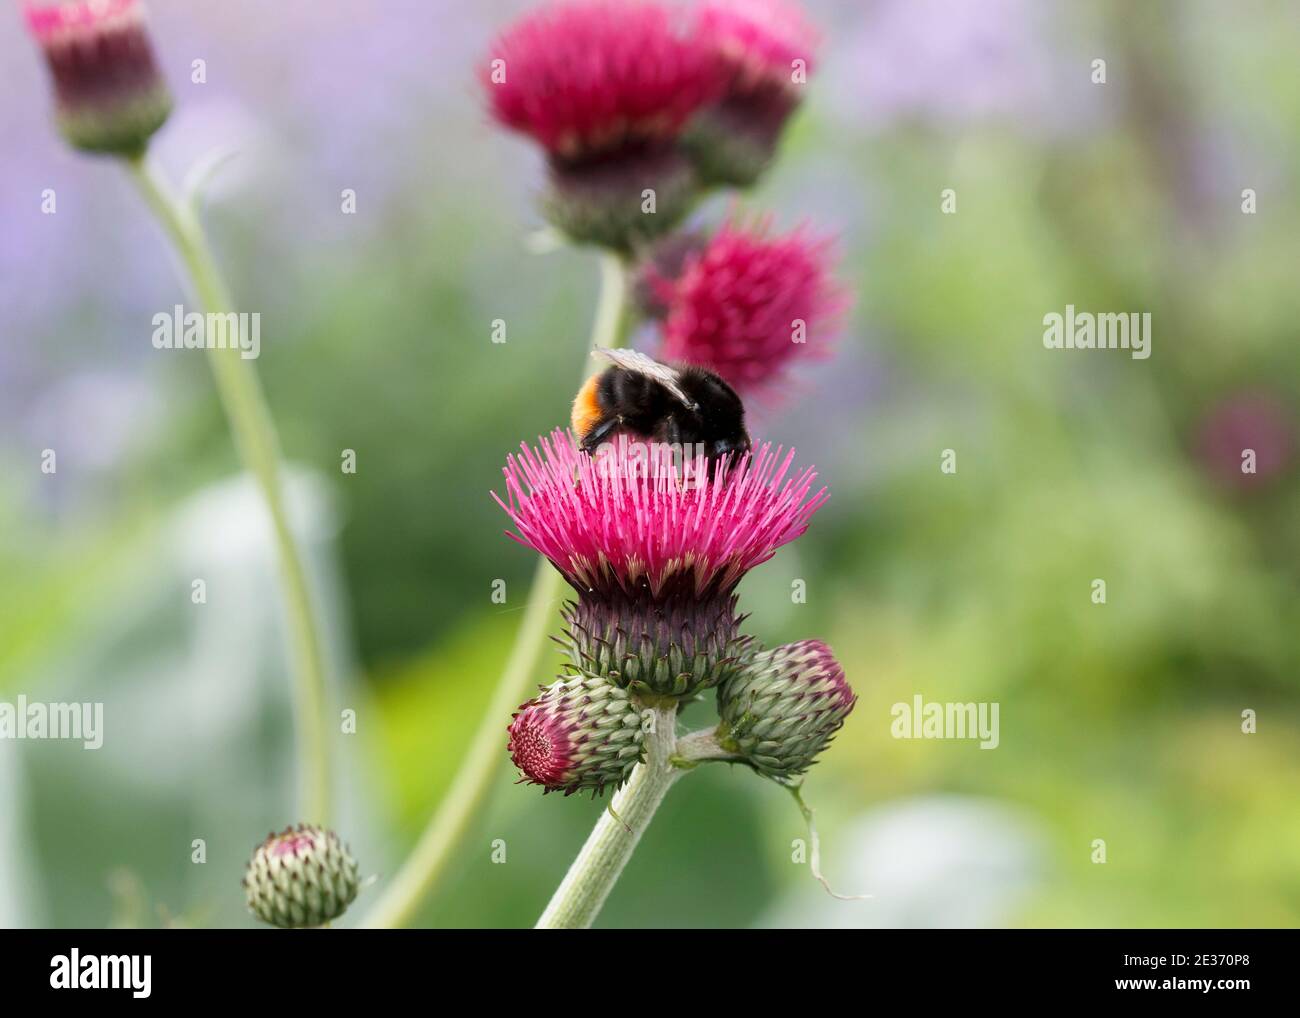 Red tail bumblebee (Bombus lapidarius) foraging on ornamental thistle, Cirsium rivulare atropurpureum Stock Photo